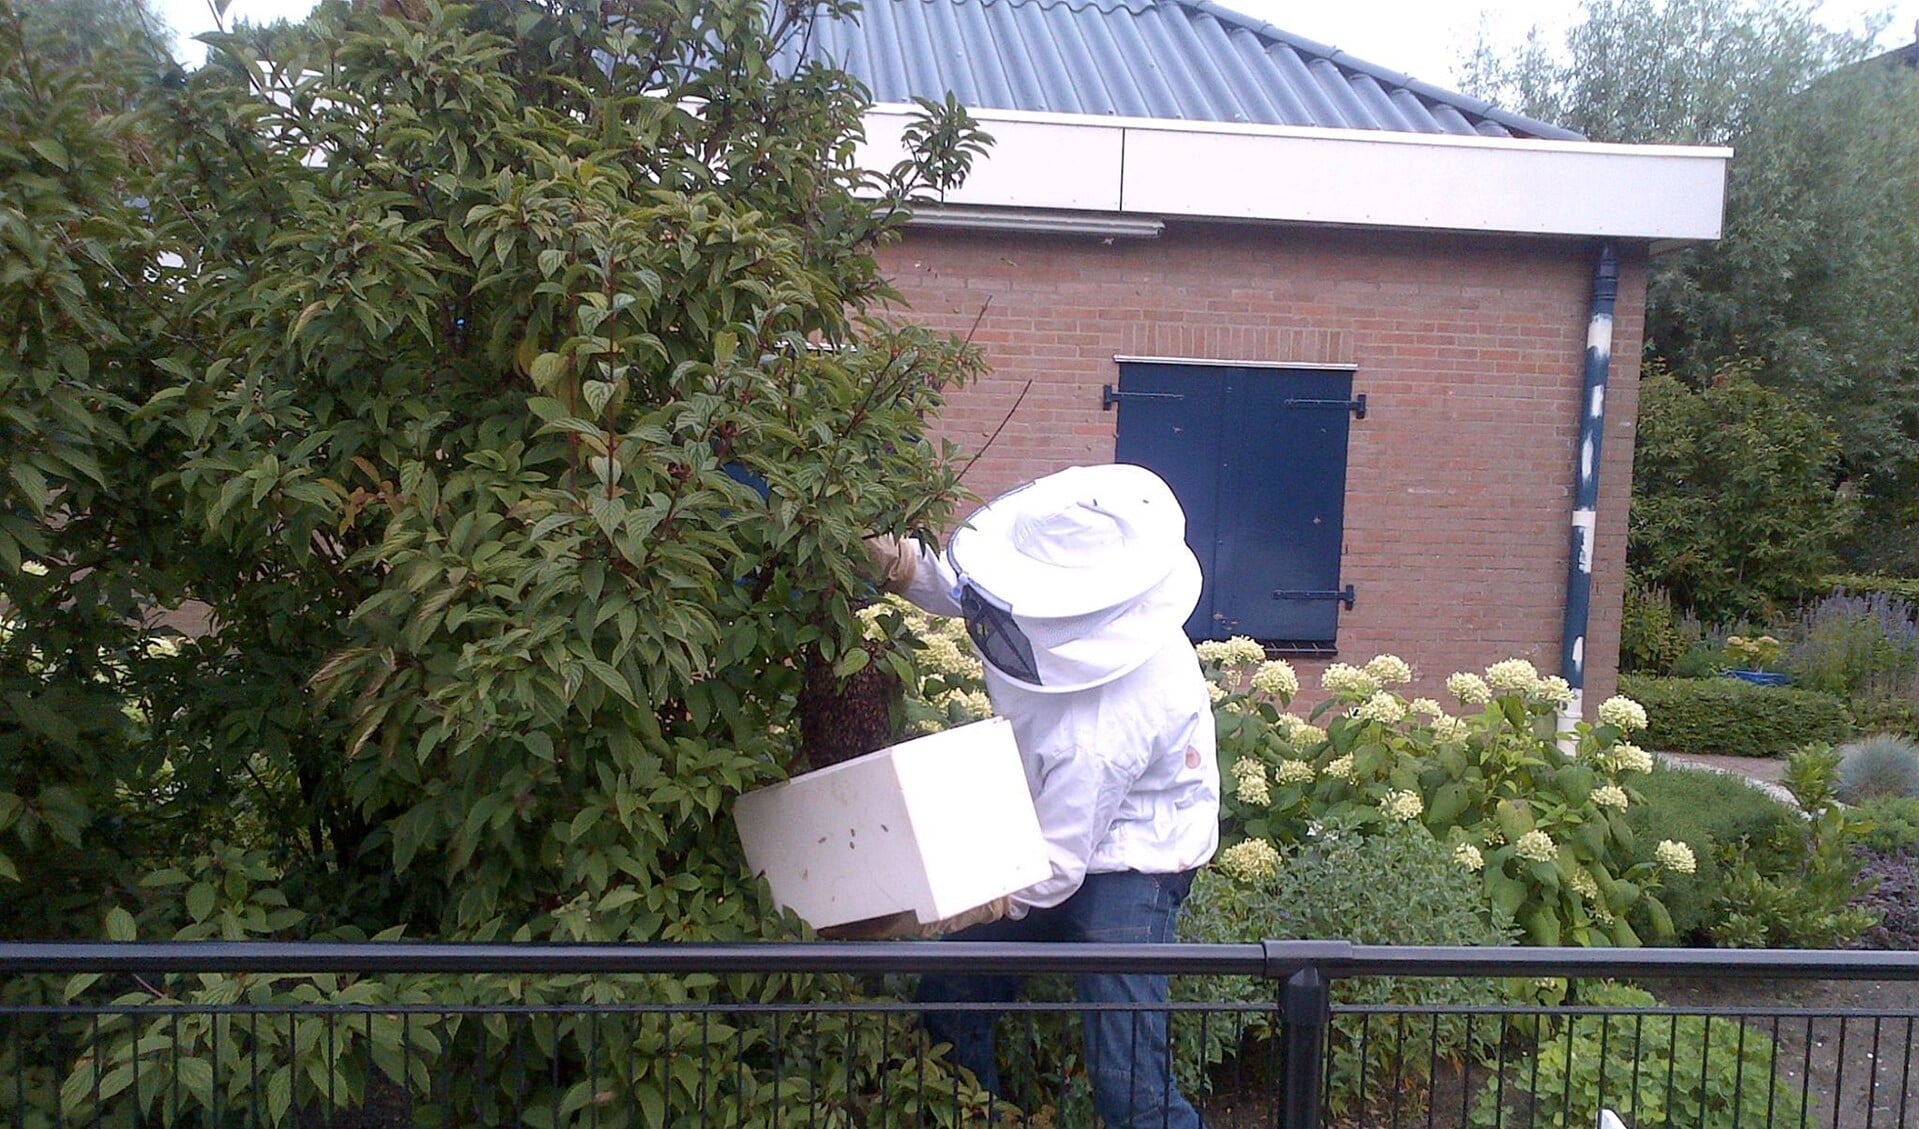 De bijen krijgen een plek waar niemand last van hen heeft. Foto: politie Nissewaard.